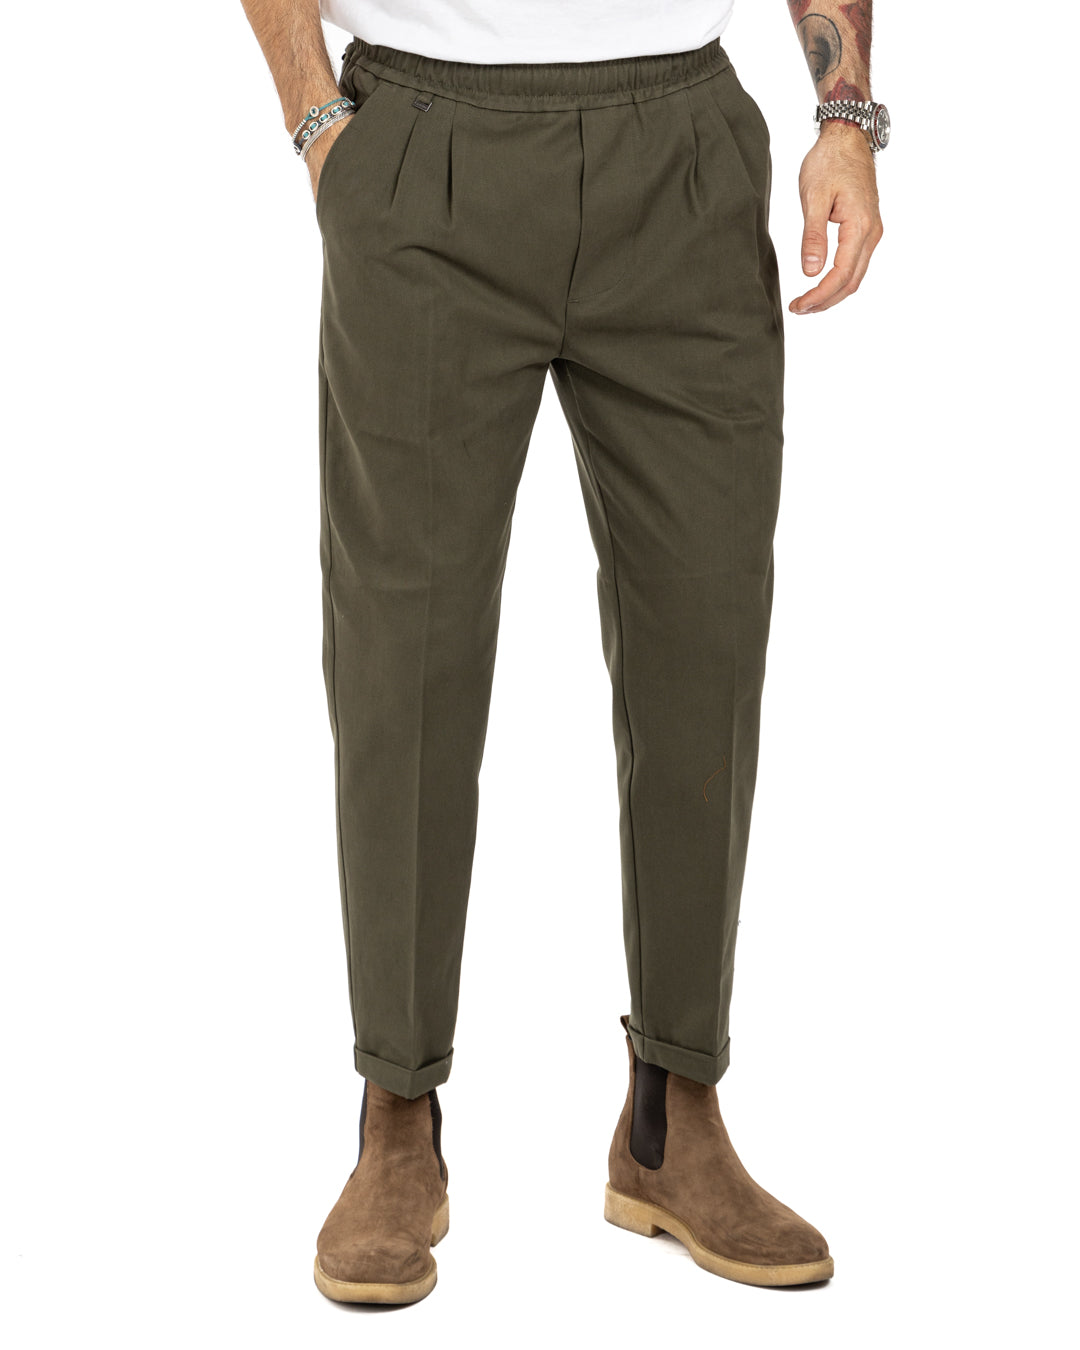 Larry - pantalon militaire en coton